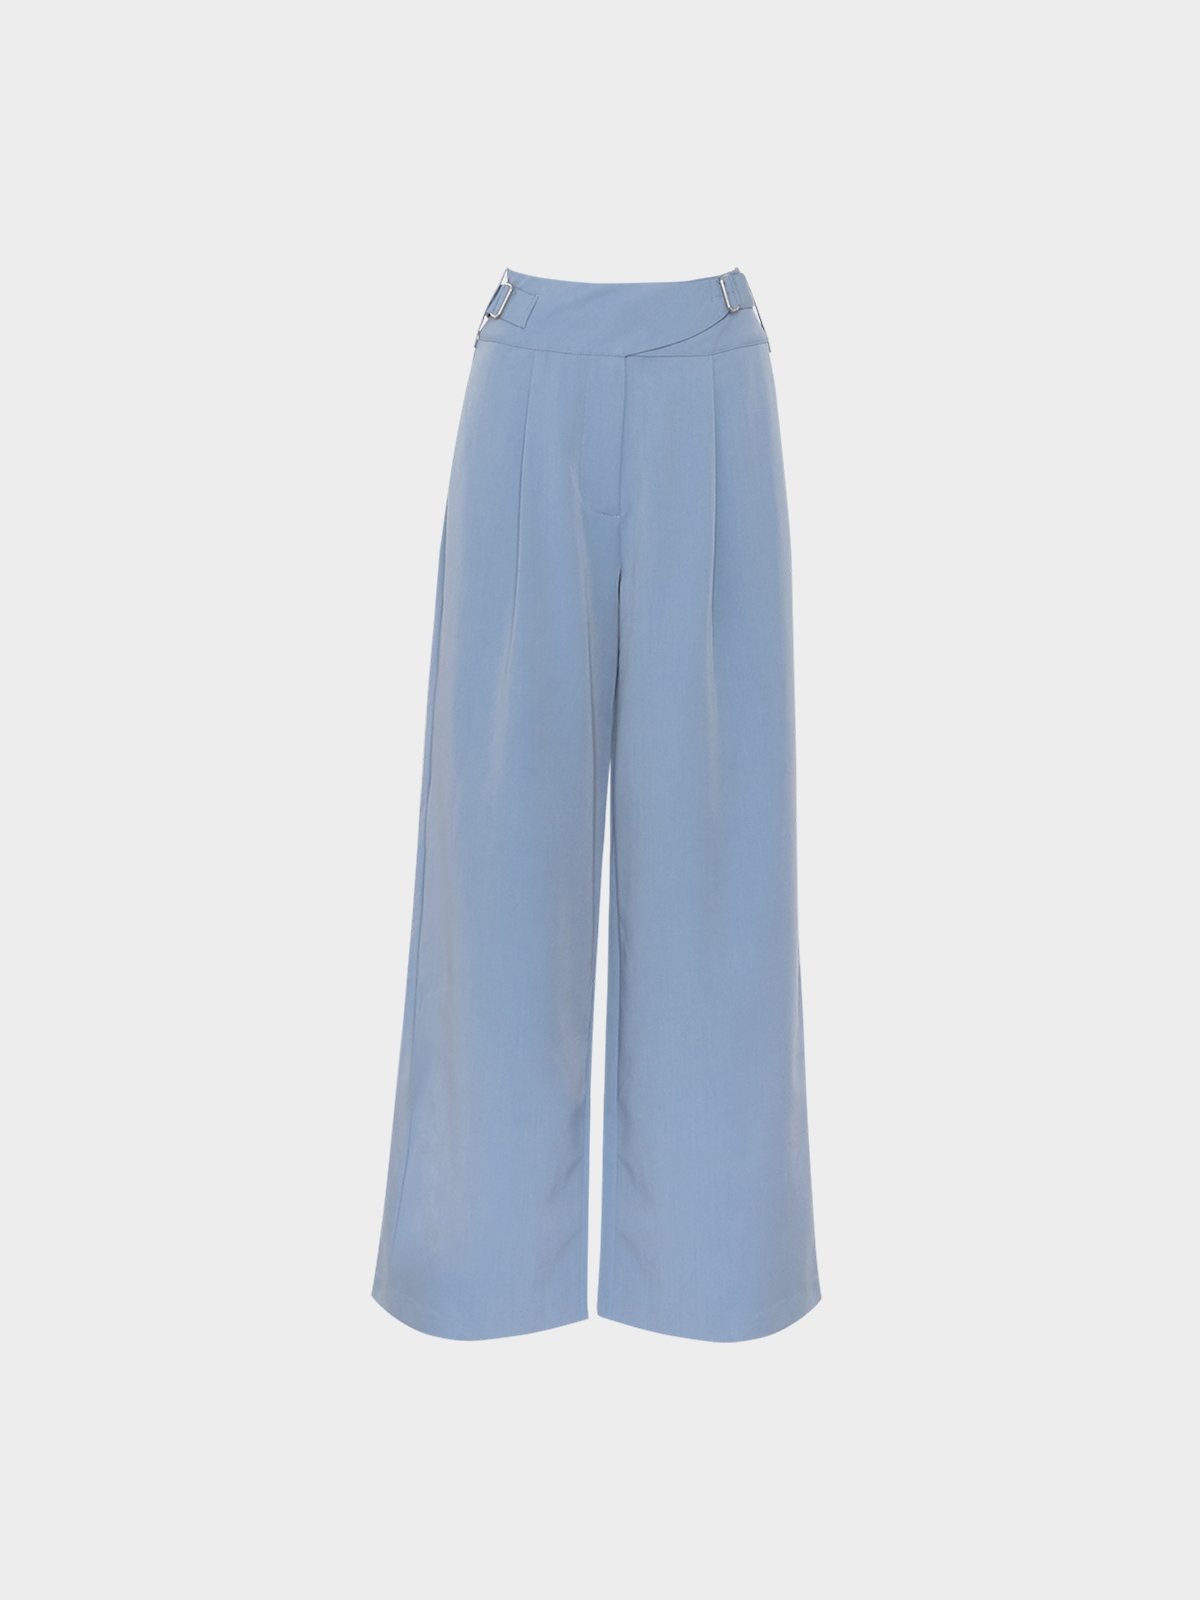 High Waist Flare Pants - Blue - Pomelo Fashion